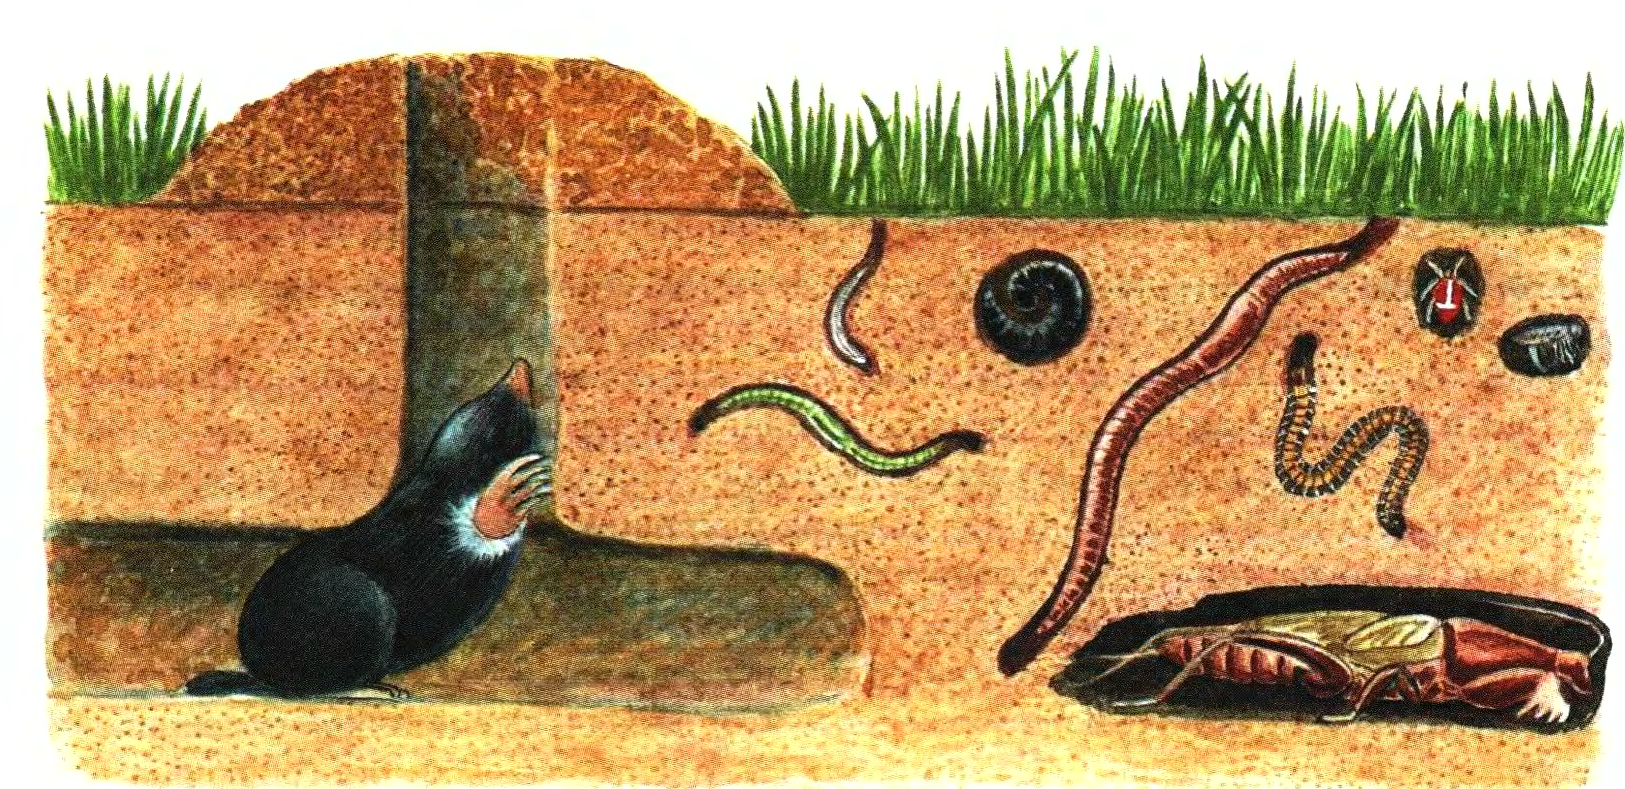 3 группа обитателей почвы составляет животные. Черви обитатели почвенной среды. Геобионты геофилы Геоксены. Животные почвы. Почва и подземные обитатели.